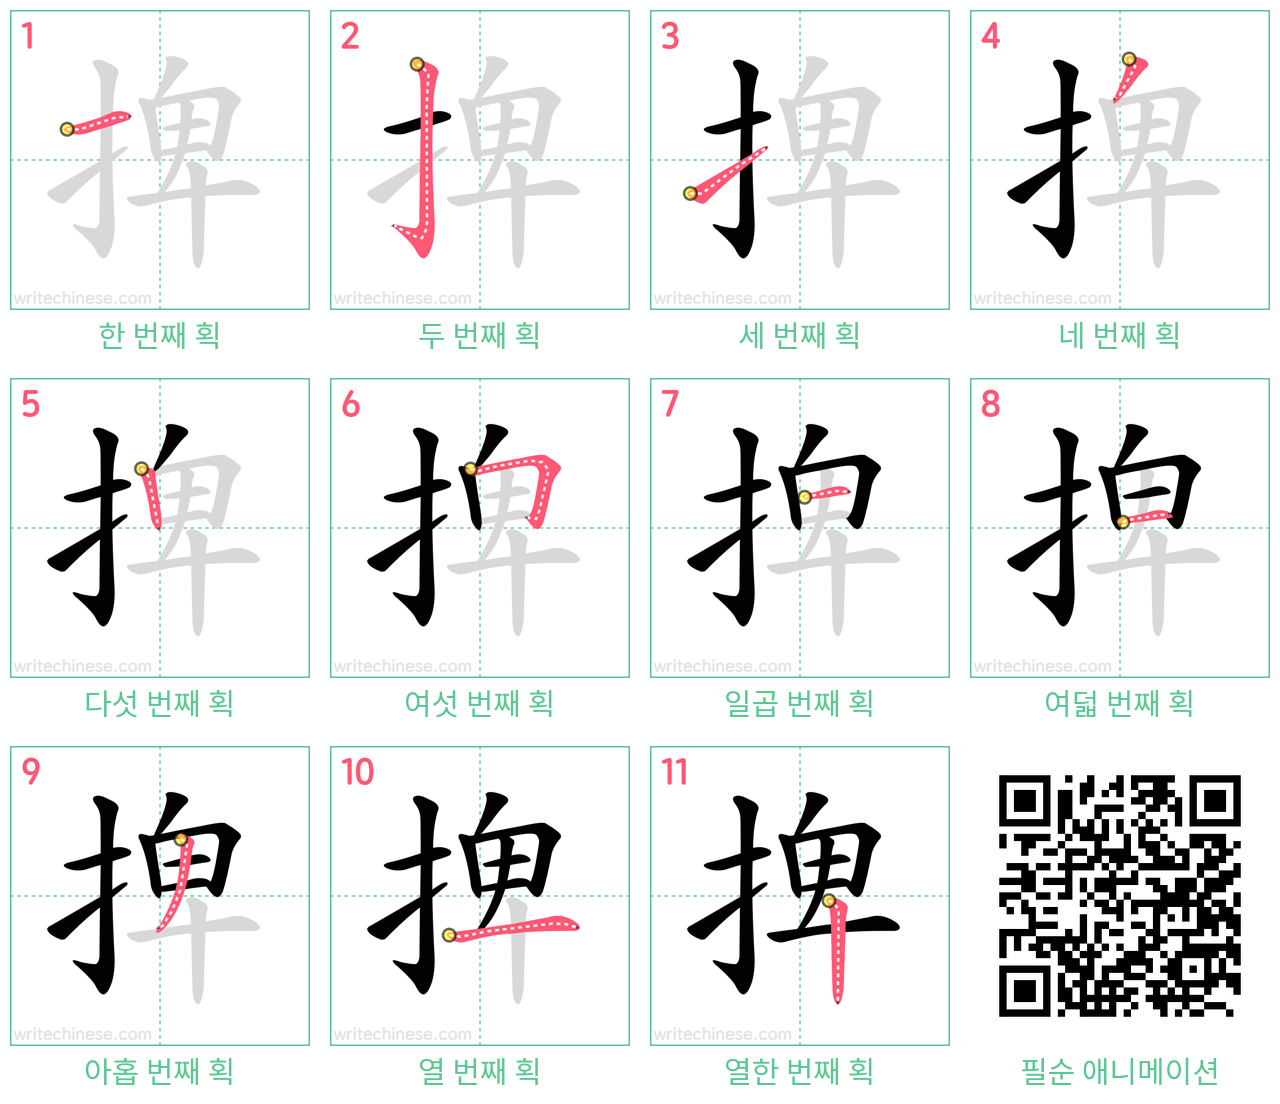 捭 step-by-step stroke order diagrams